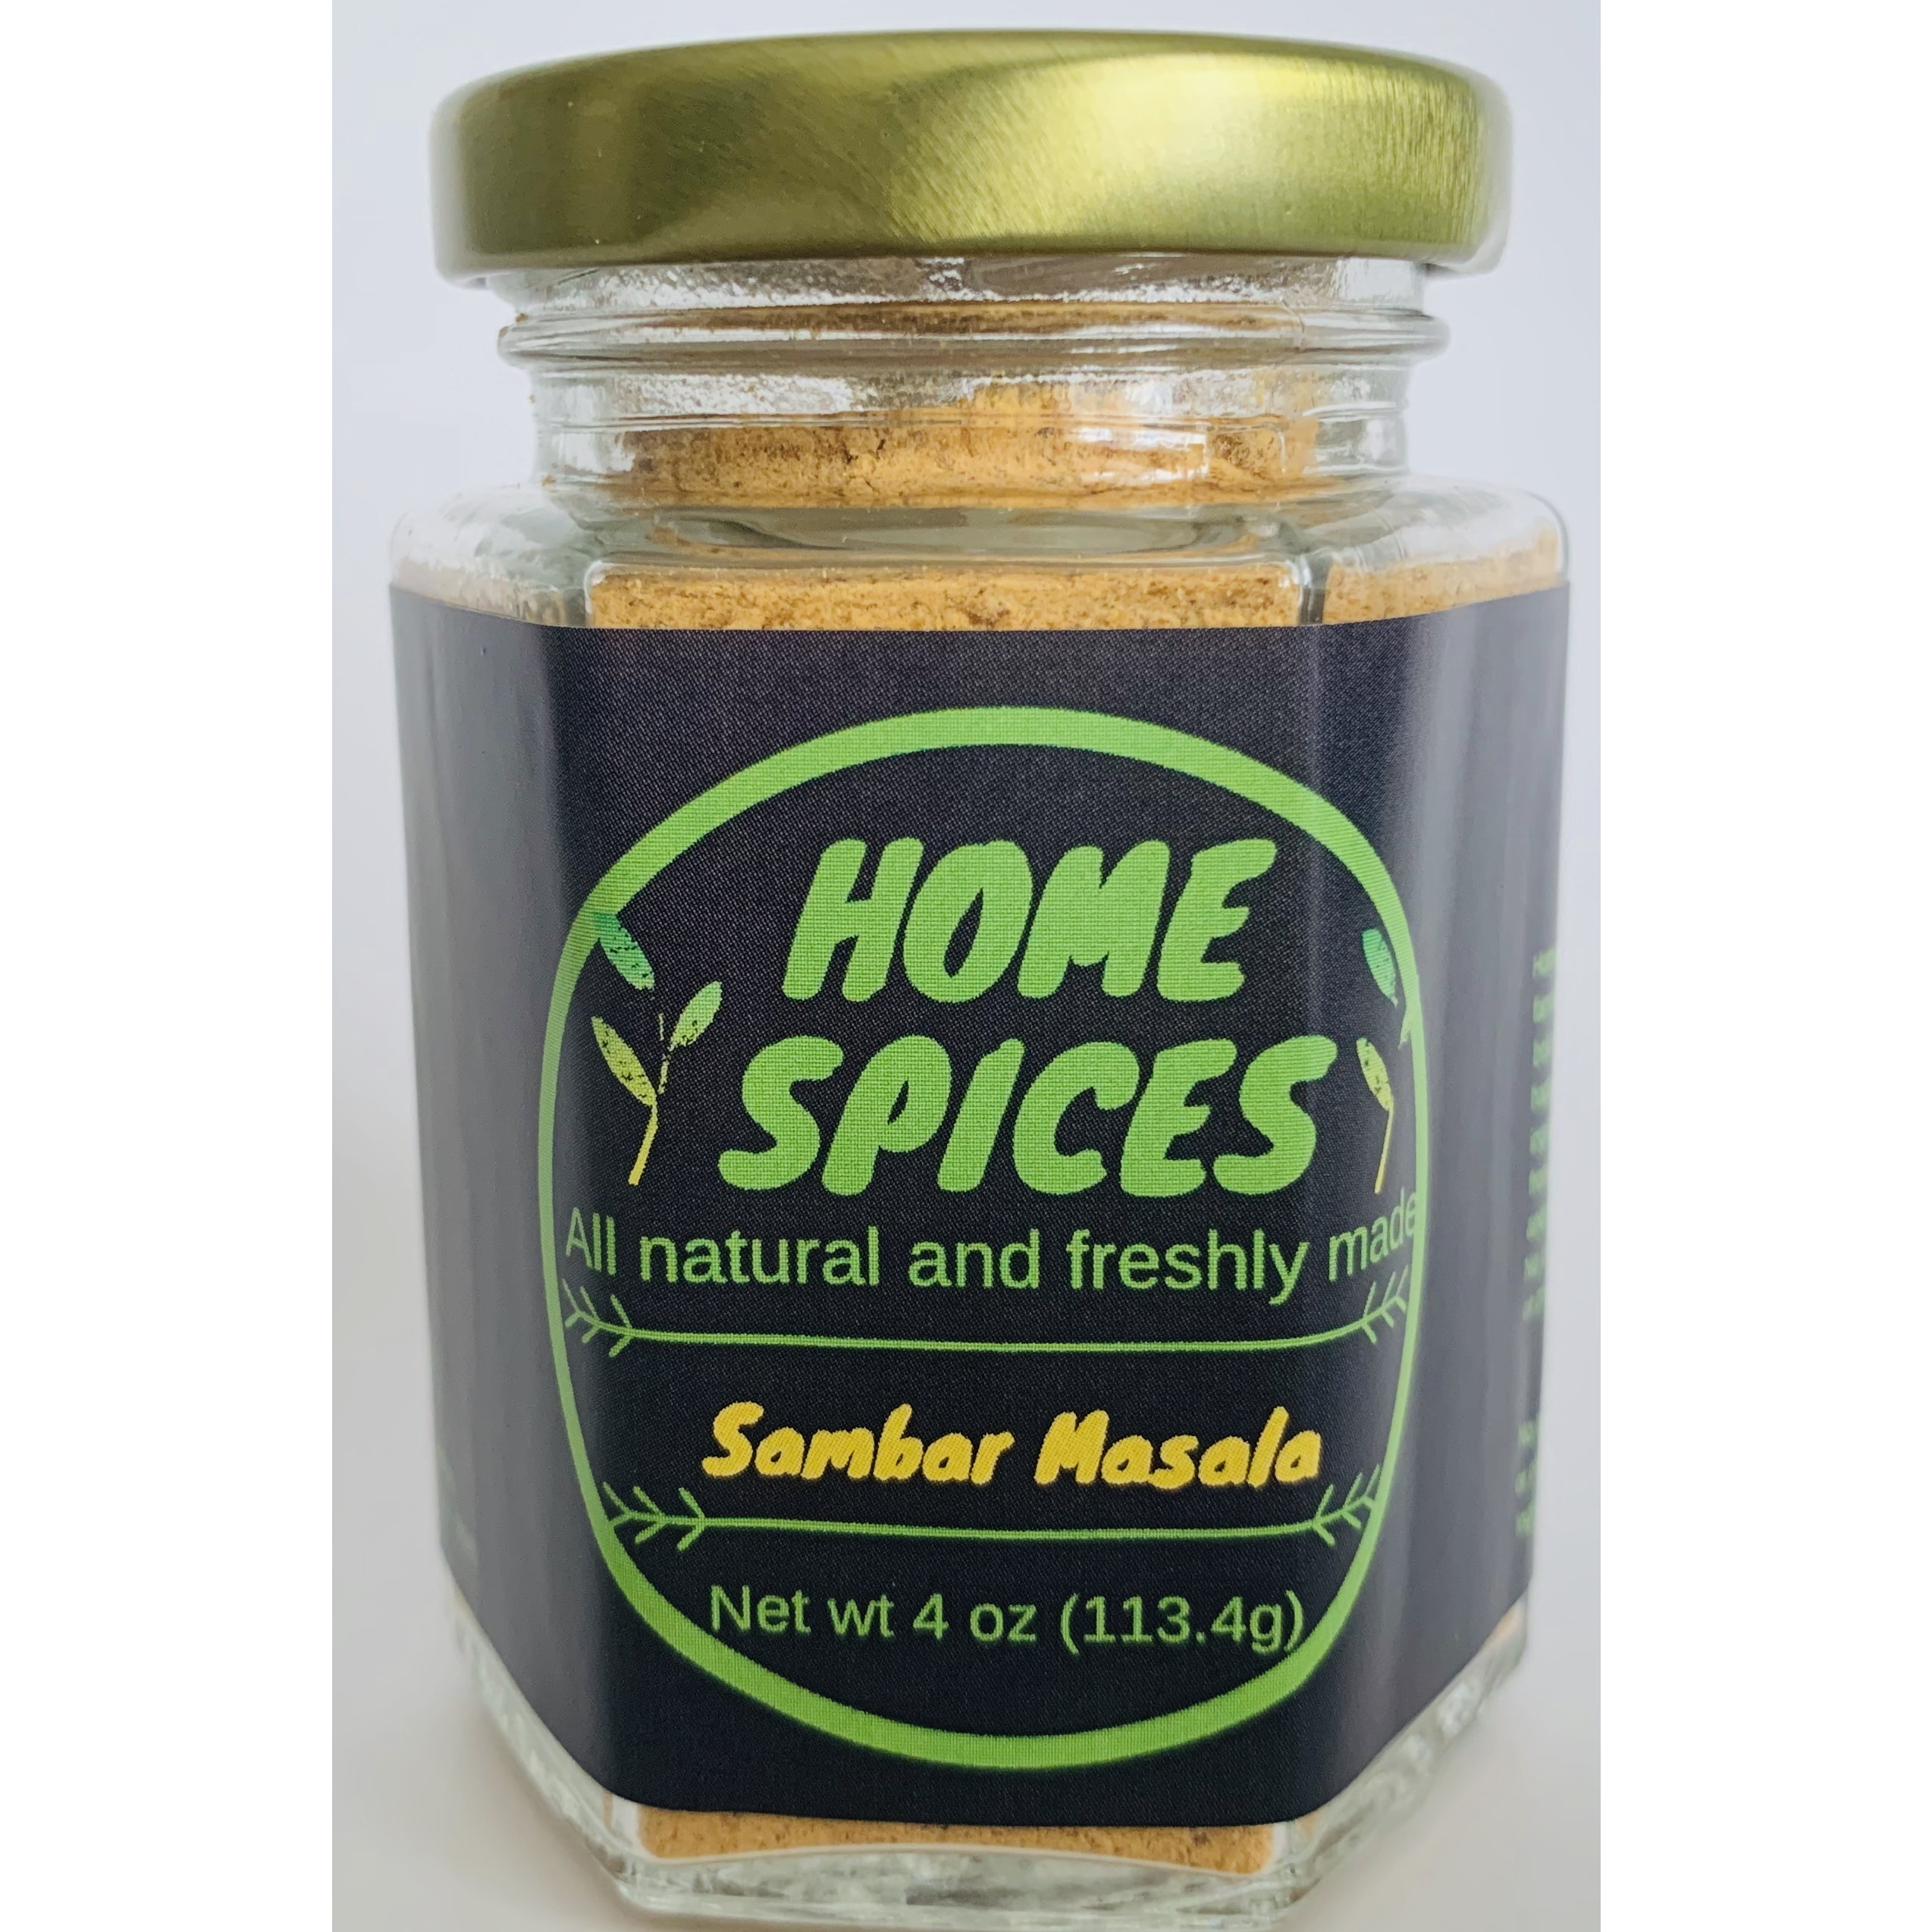 Home Spices Sambar Masala